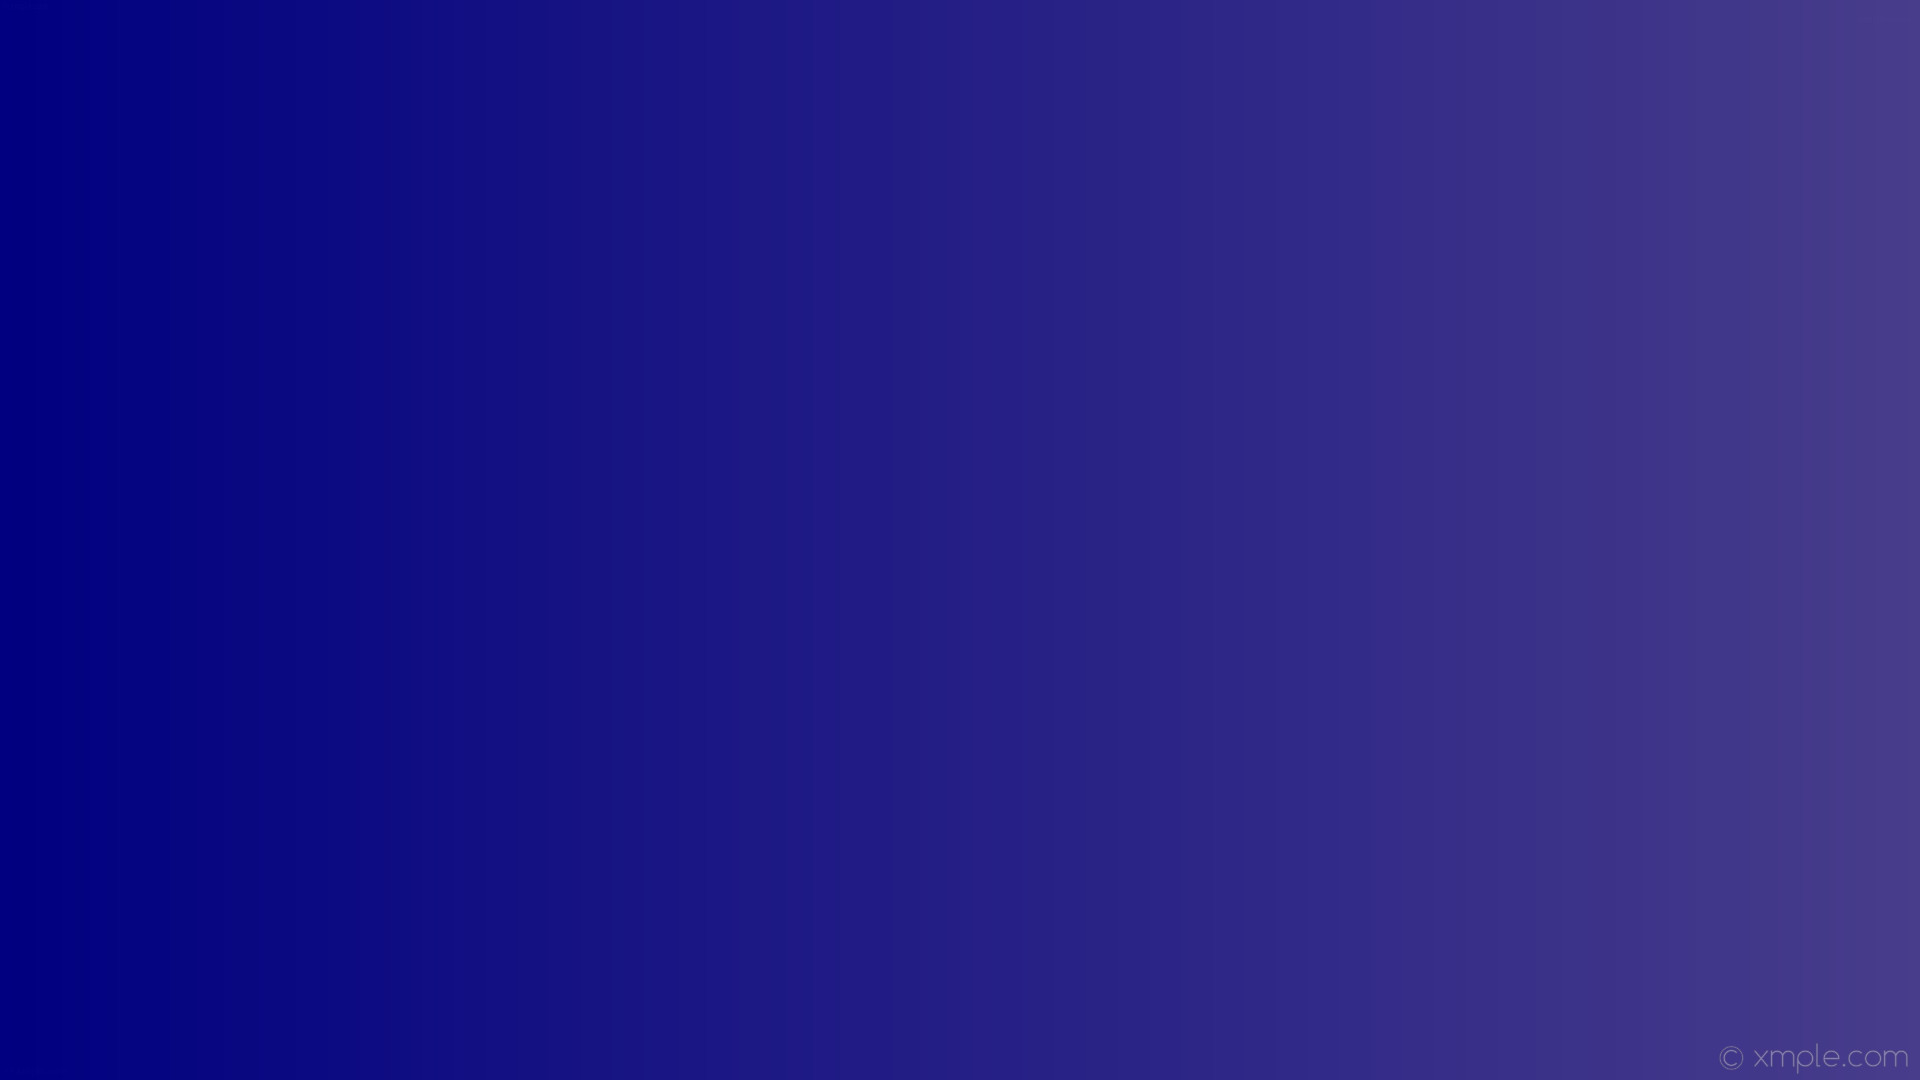 1920x1080 wallpaper linear blue gradient purple dark slate blue navy #483d8b #000080  0Â°